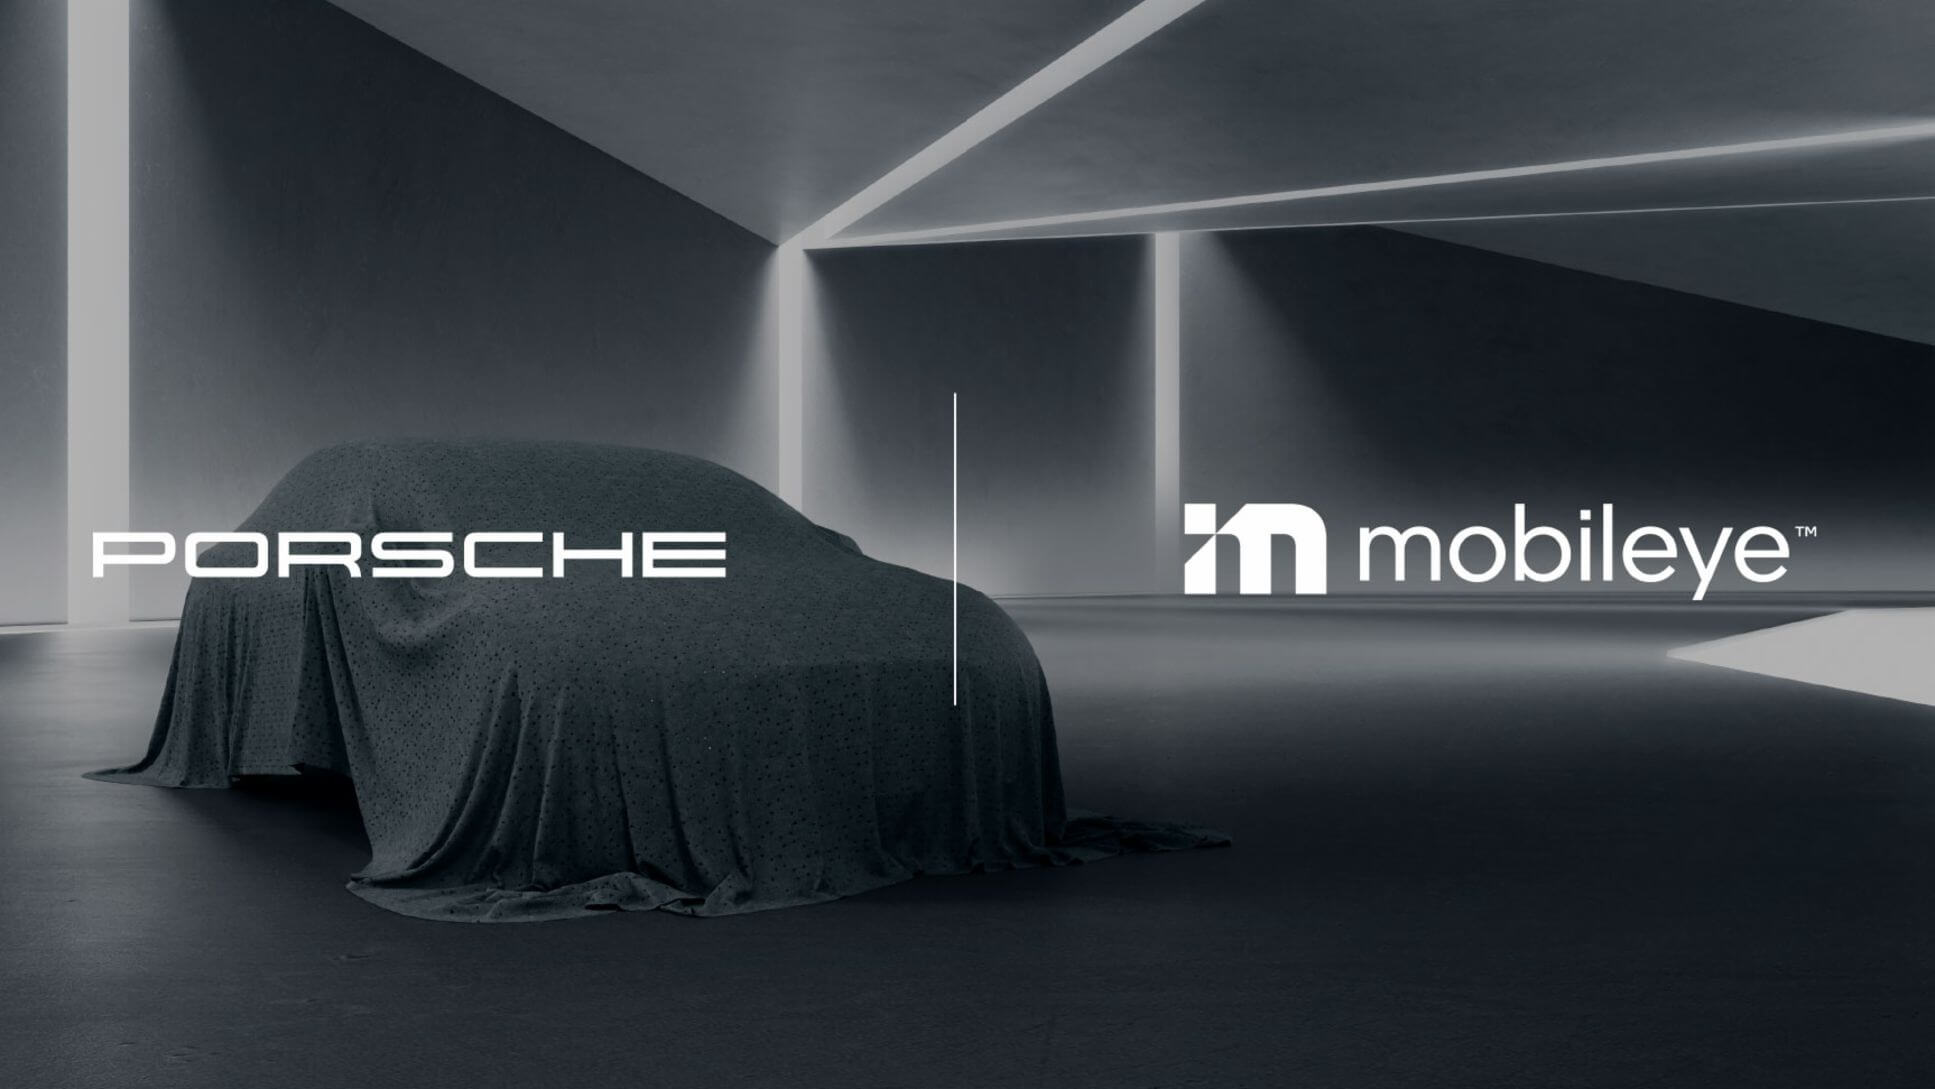 Досвід водіння Porsche трансформується завдяки автономному запуску транспортного засобу